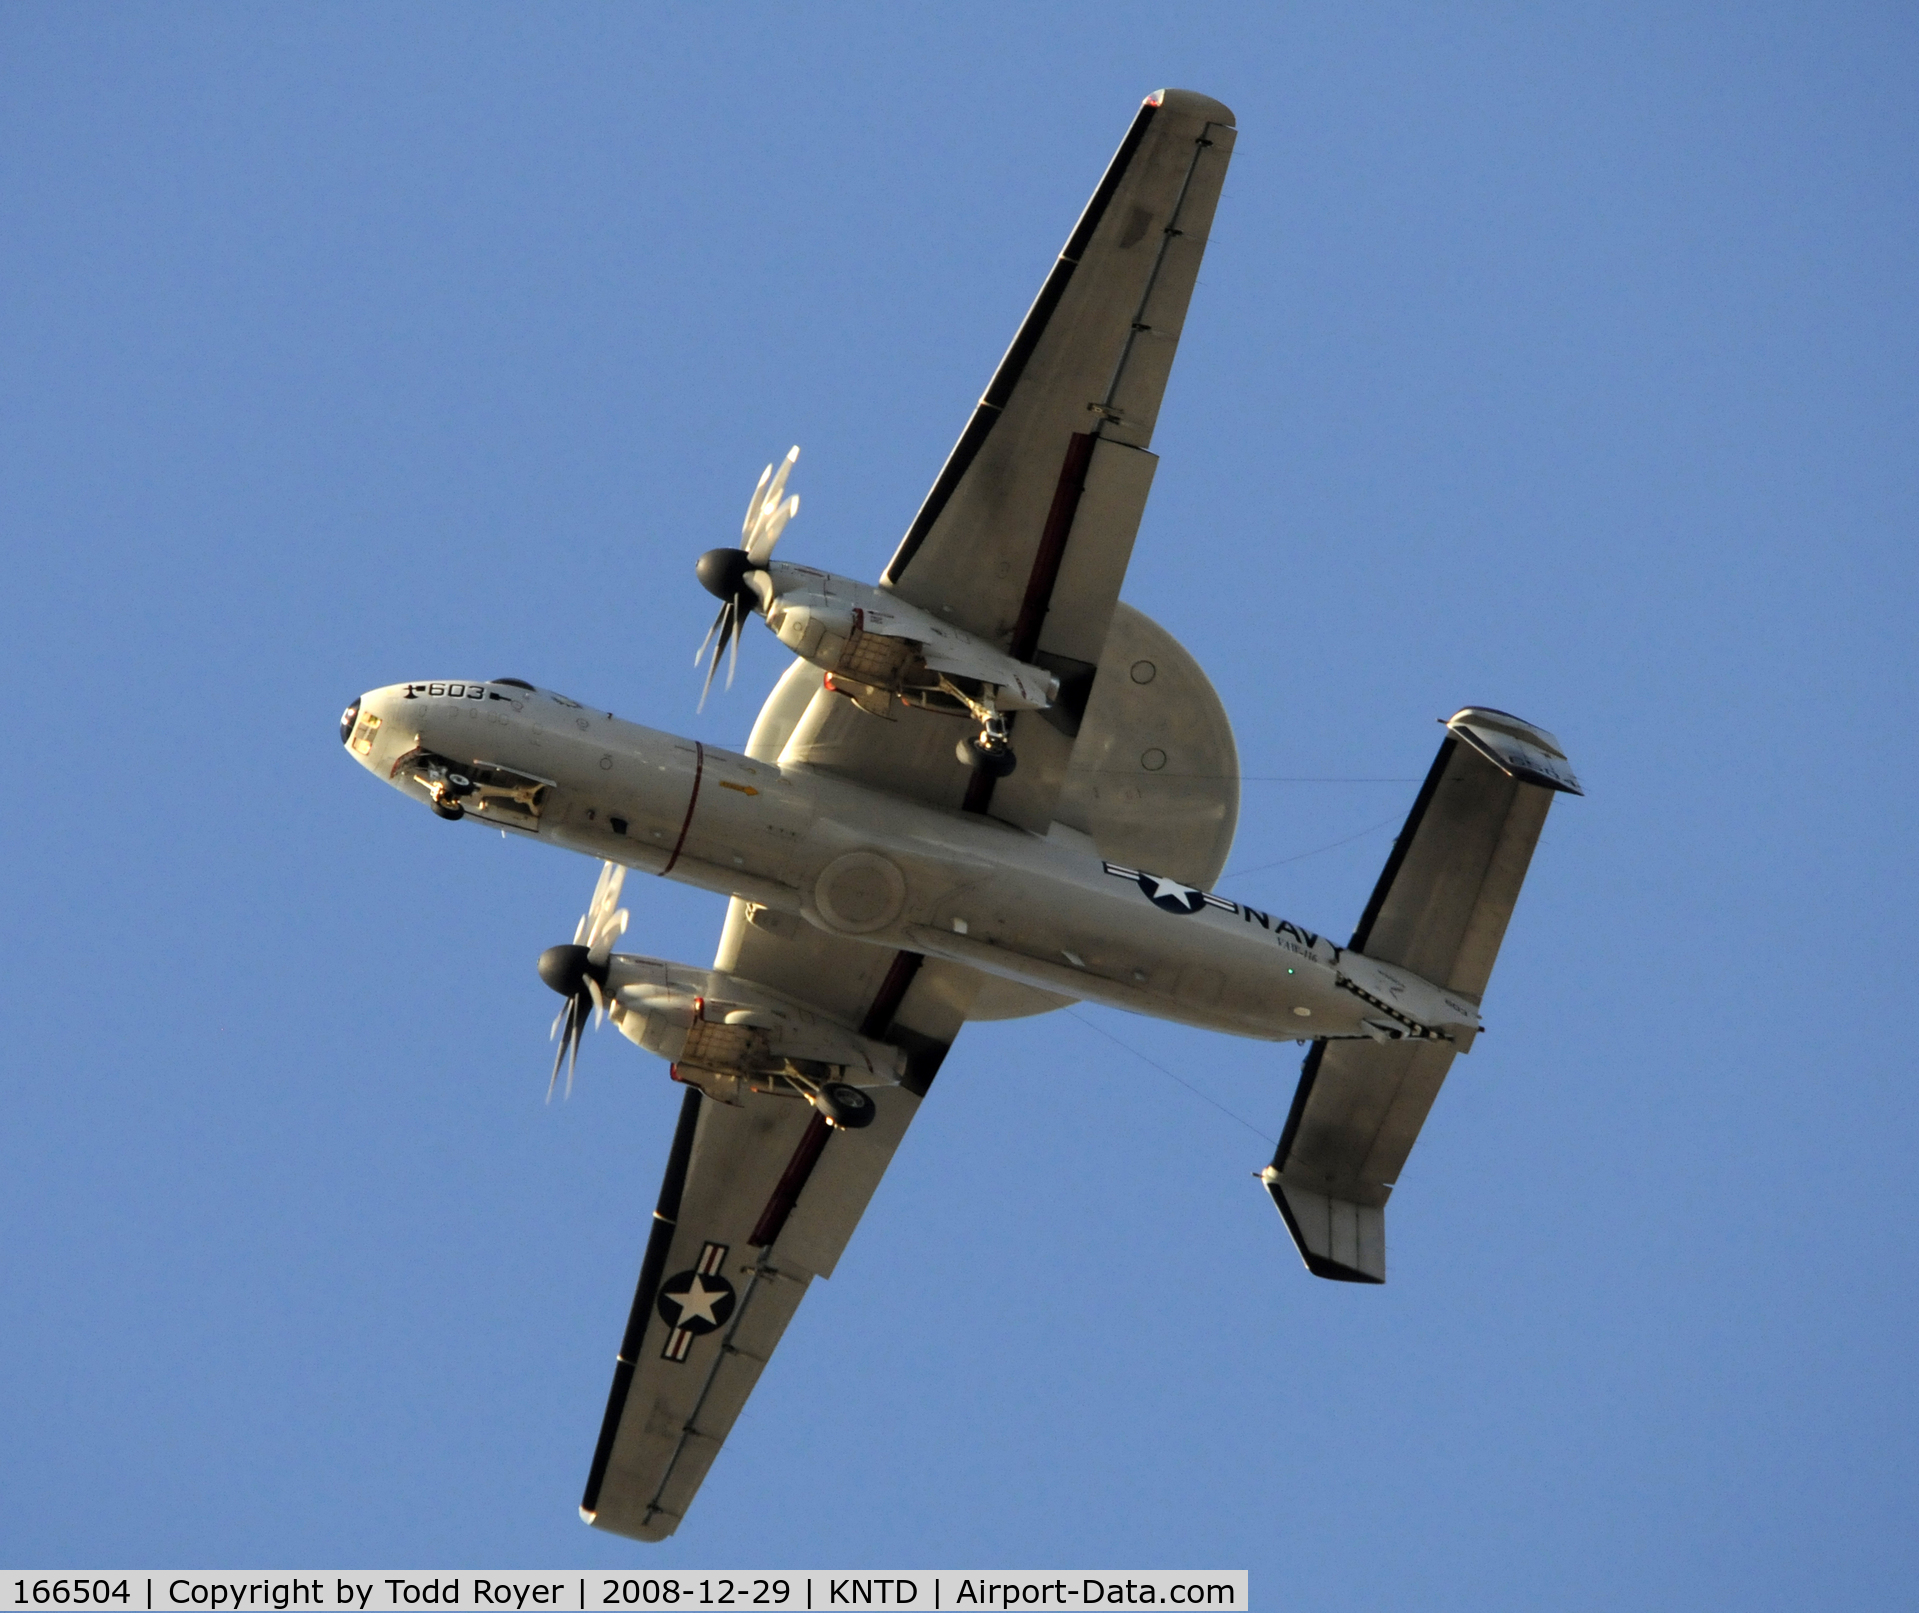 166504, Northrop Grumman E-2C Hawkeye 2000 (G-123) C/N Not found 166504, From the backyard